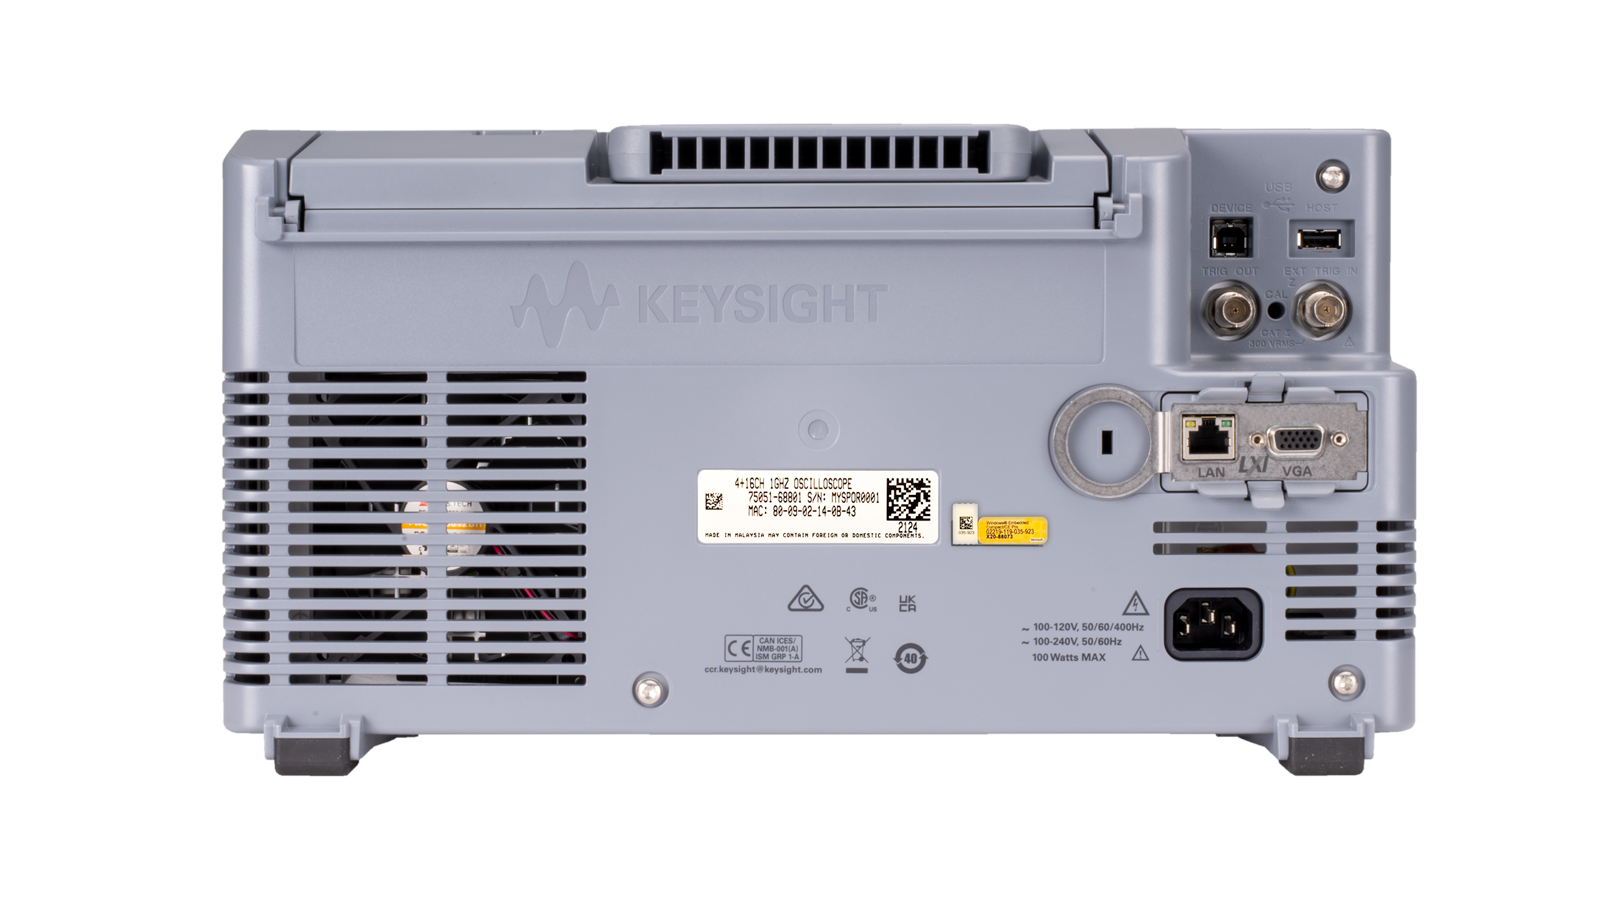 KeySight 3000X Series